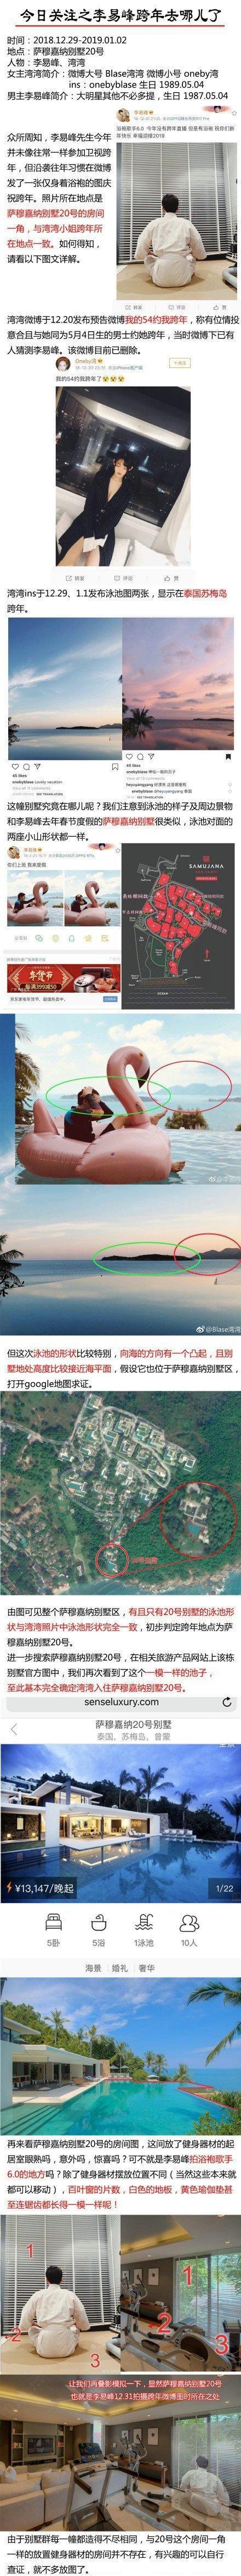 李易峰被曝与网红湾湾同游苏梅岛 经纪人给出回应